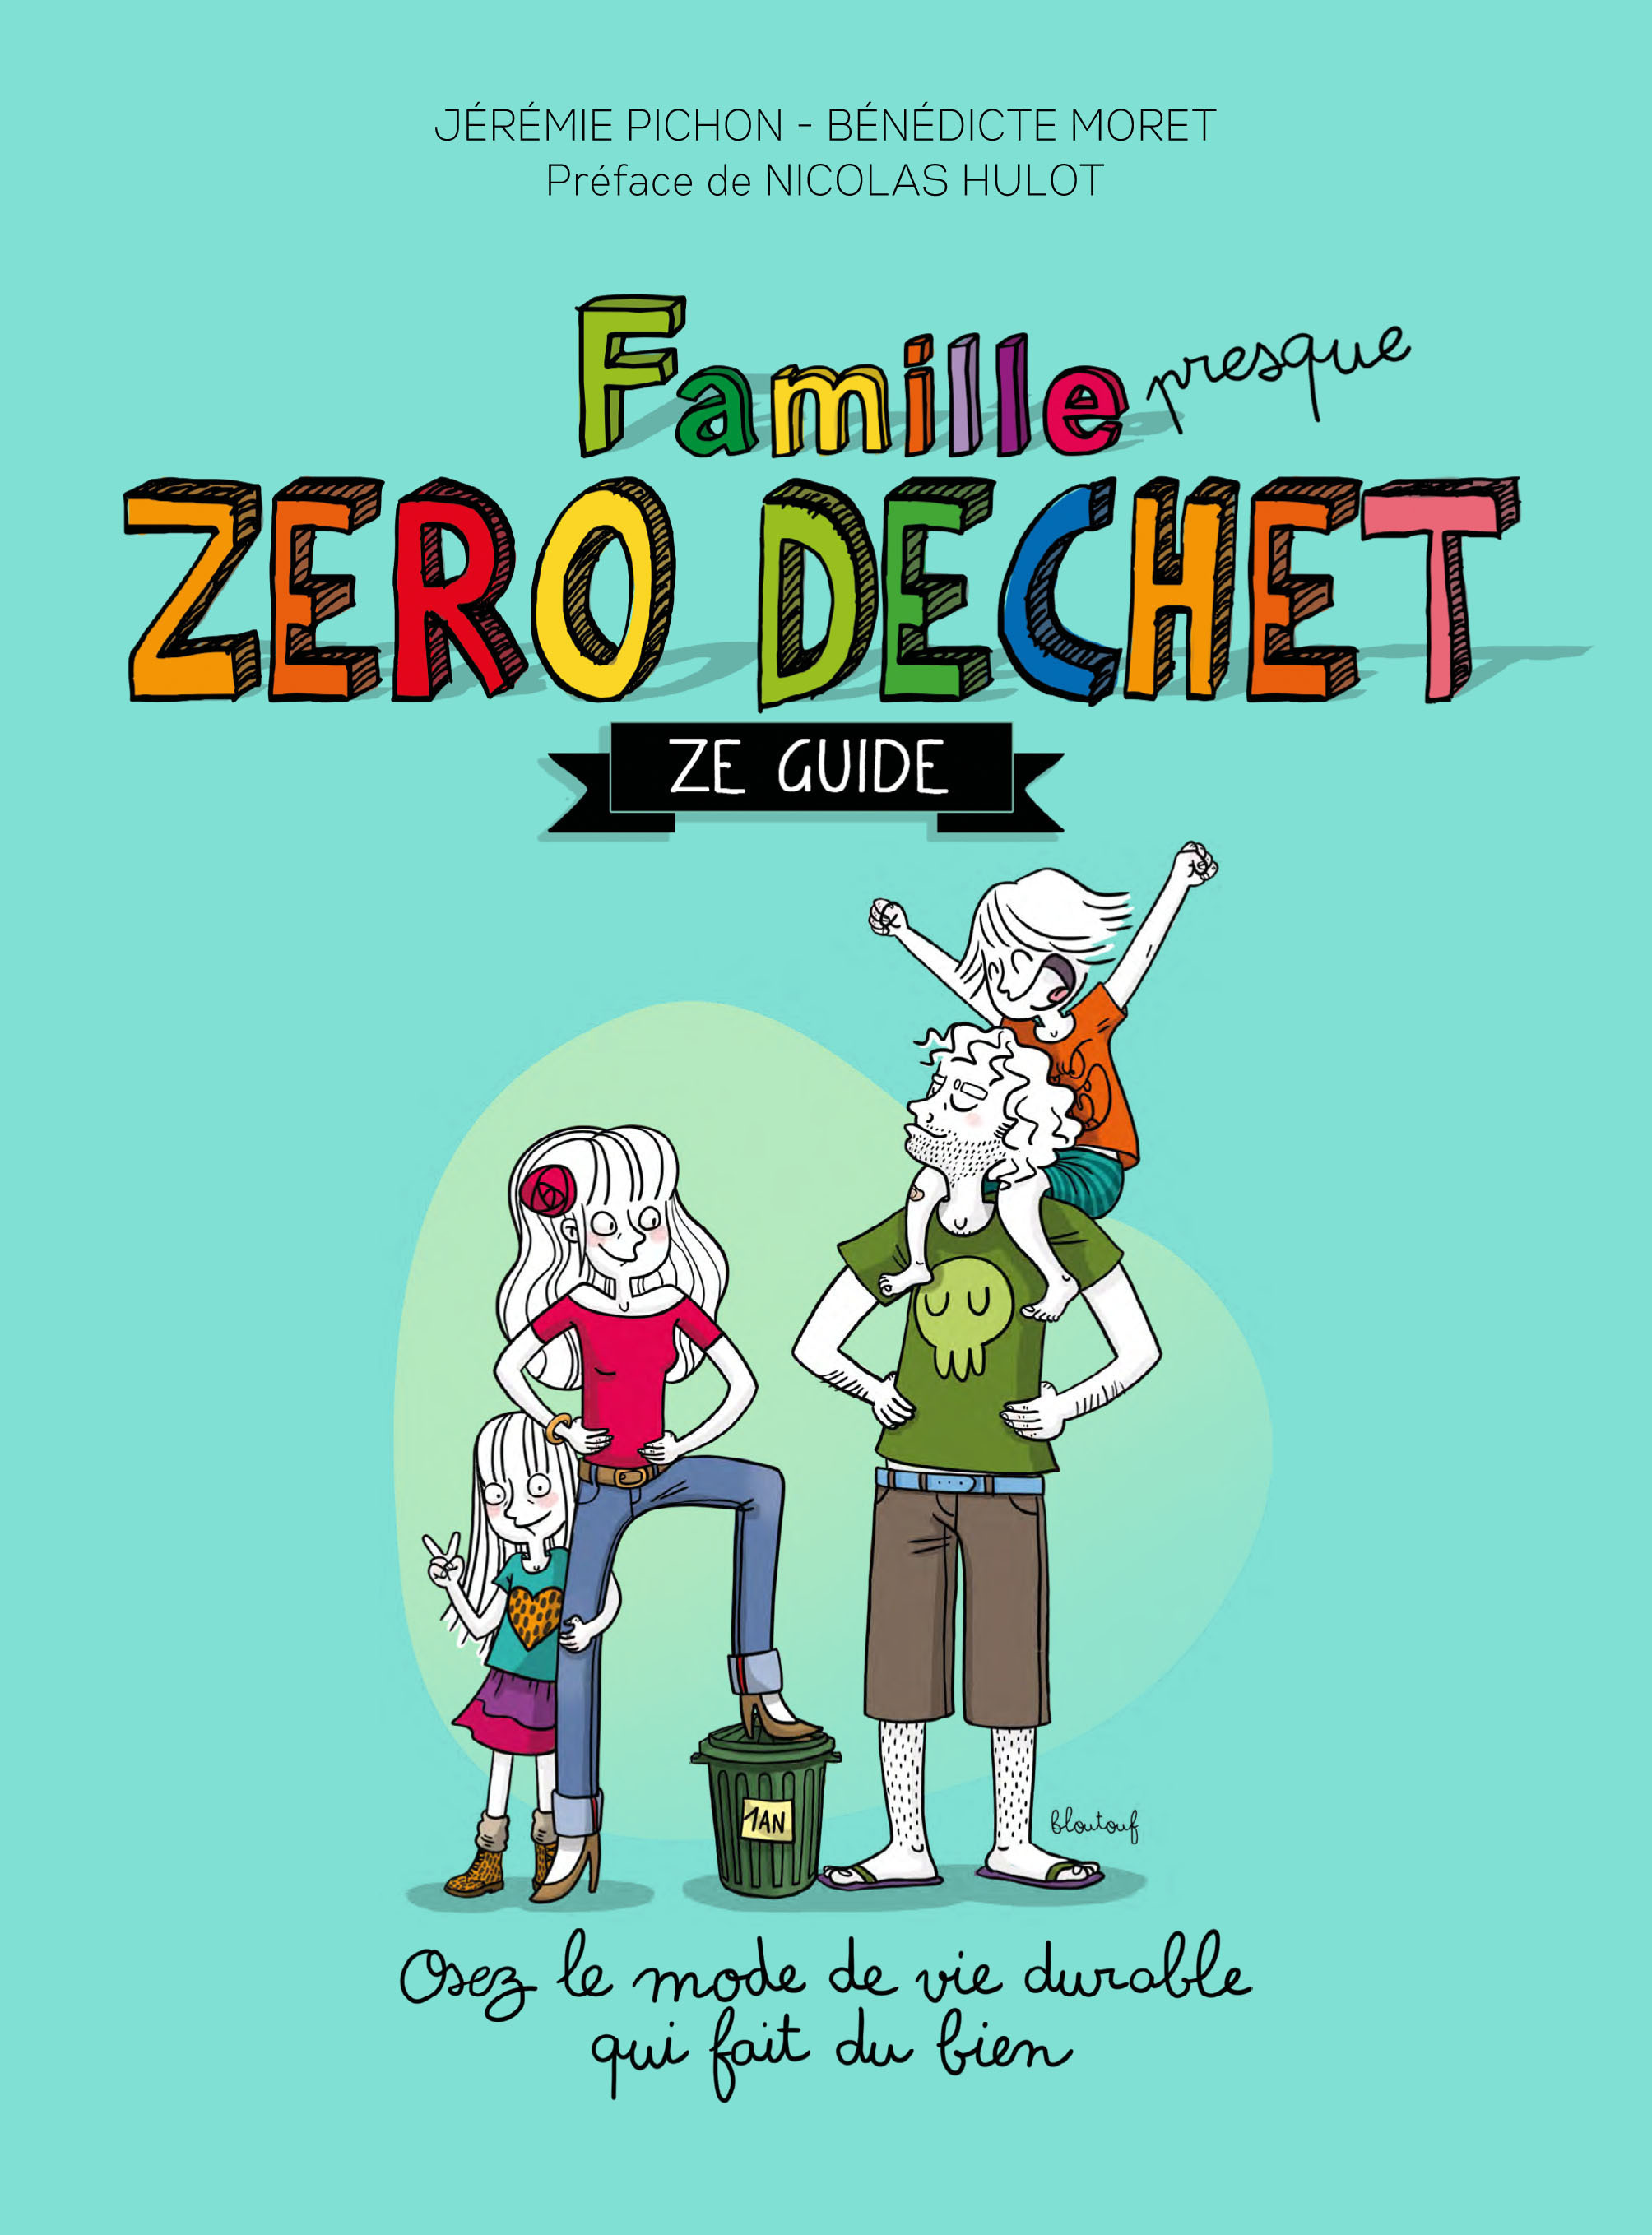 Ze Guide - Famille presque Zéro Déchet